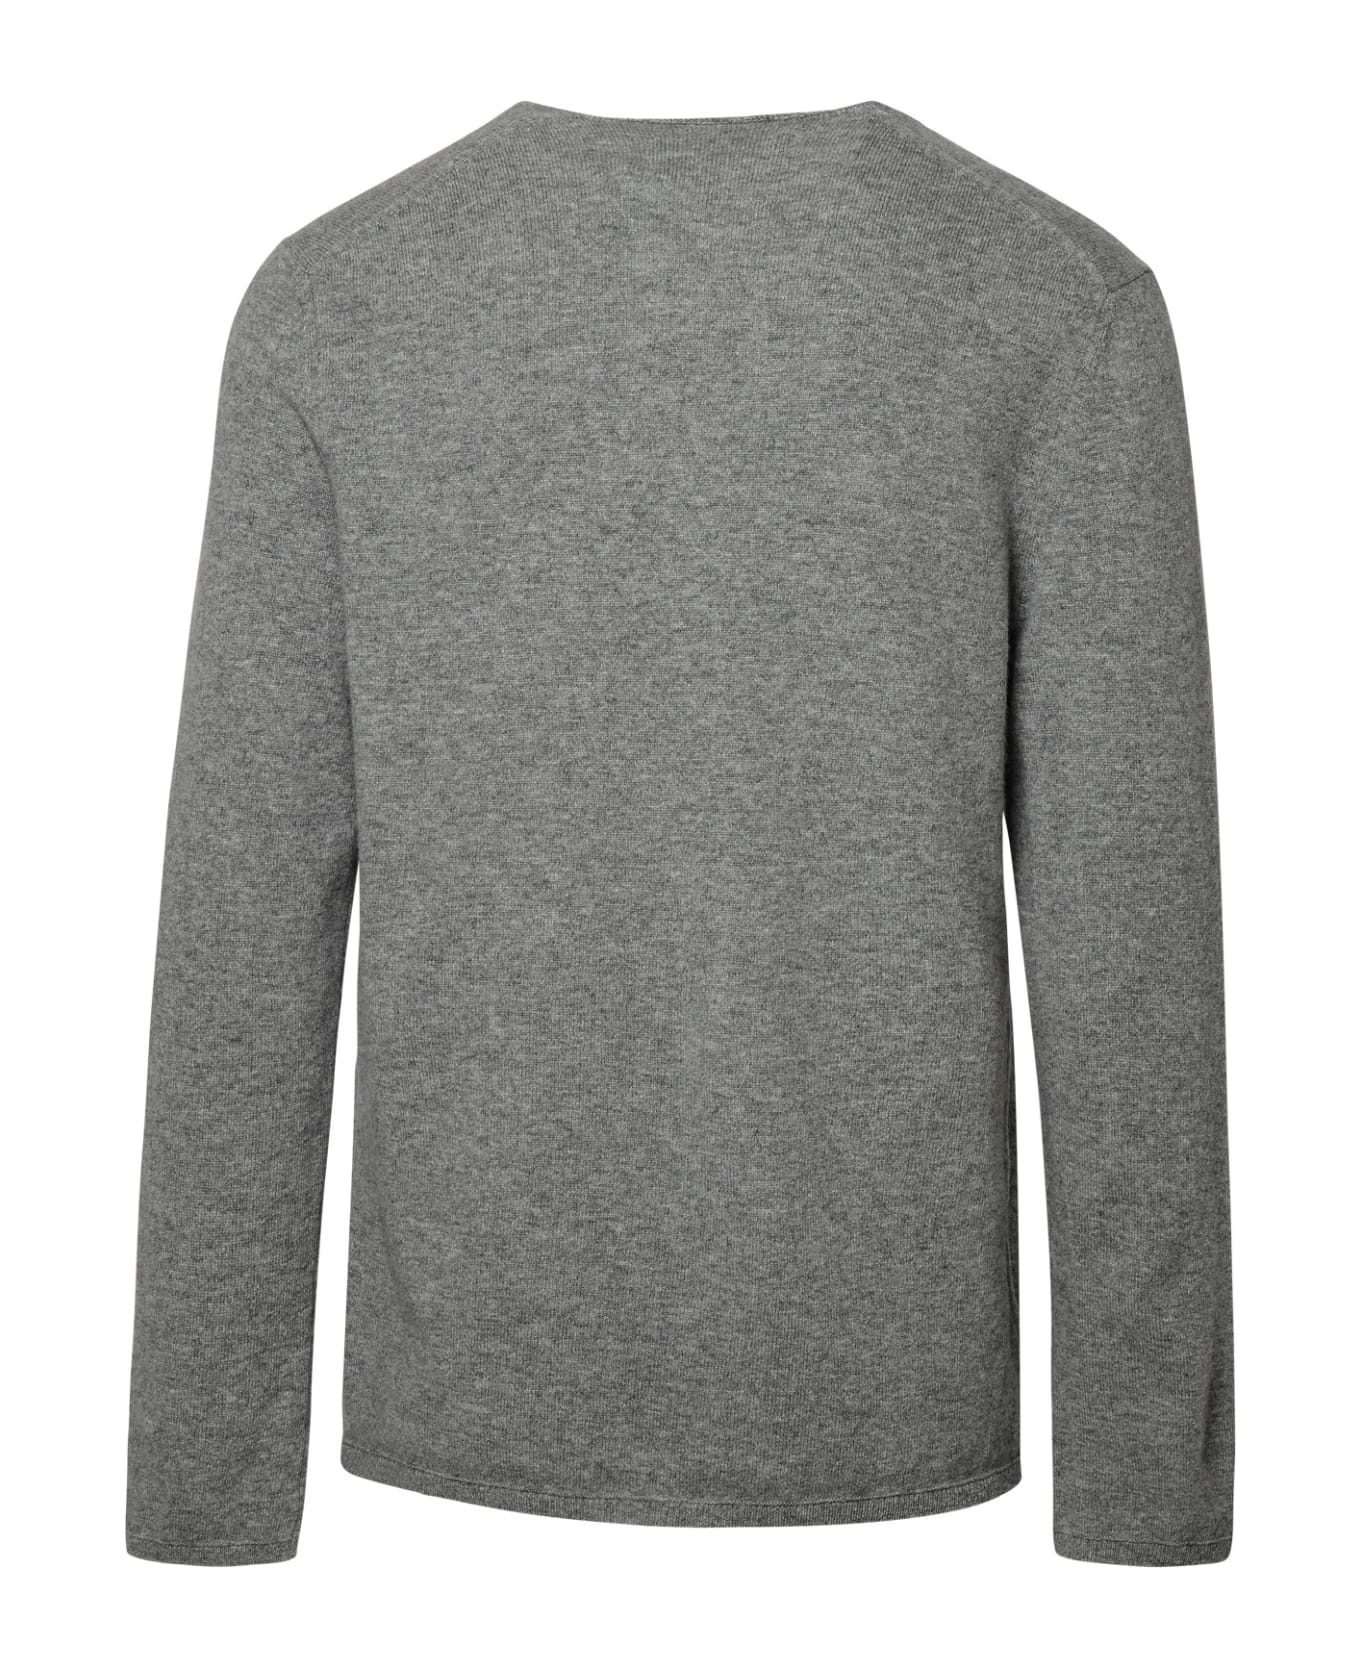 Comme des Garçons Shirt Boy Grey Wool Sweater - Grey フリース